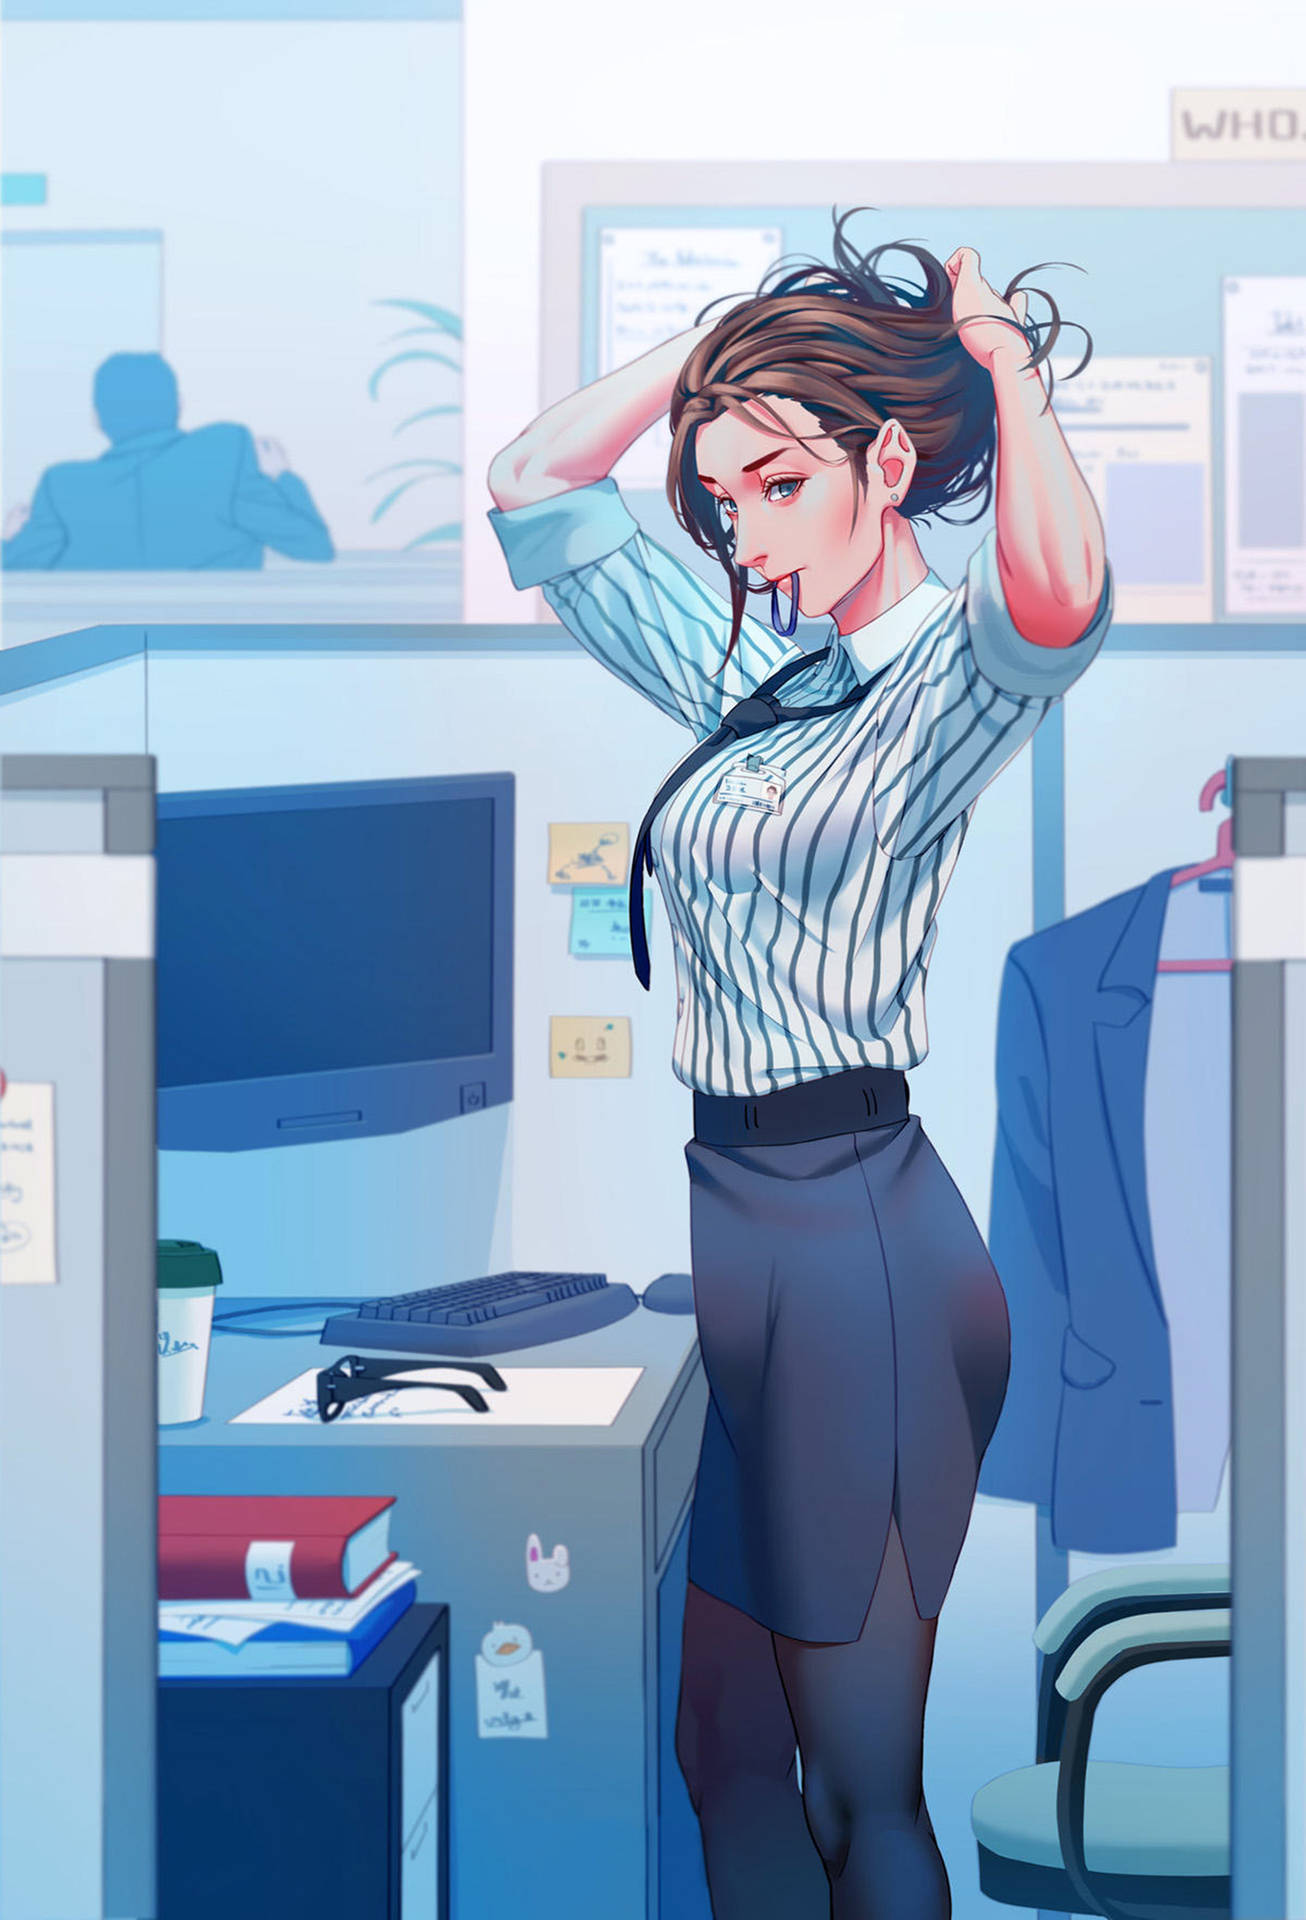 Anime Office Girl Artwork Background